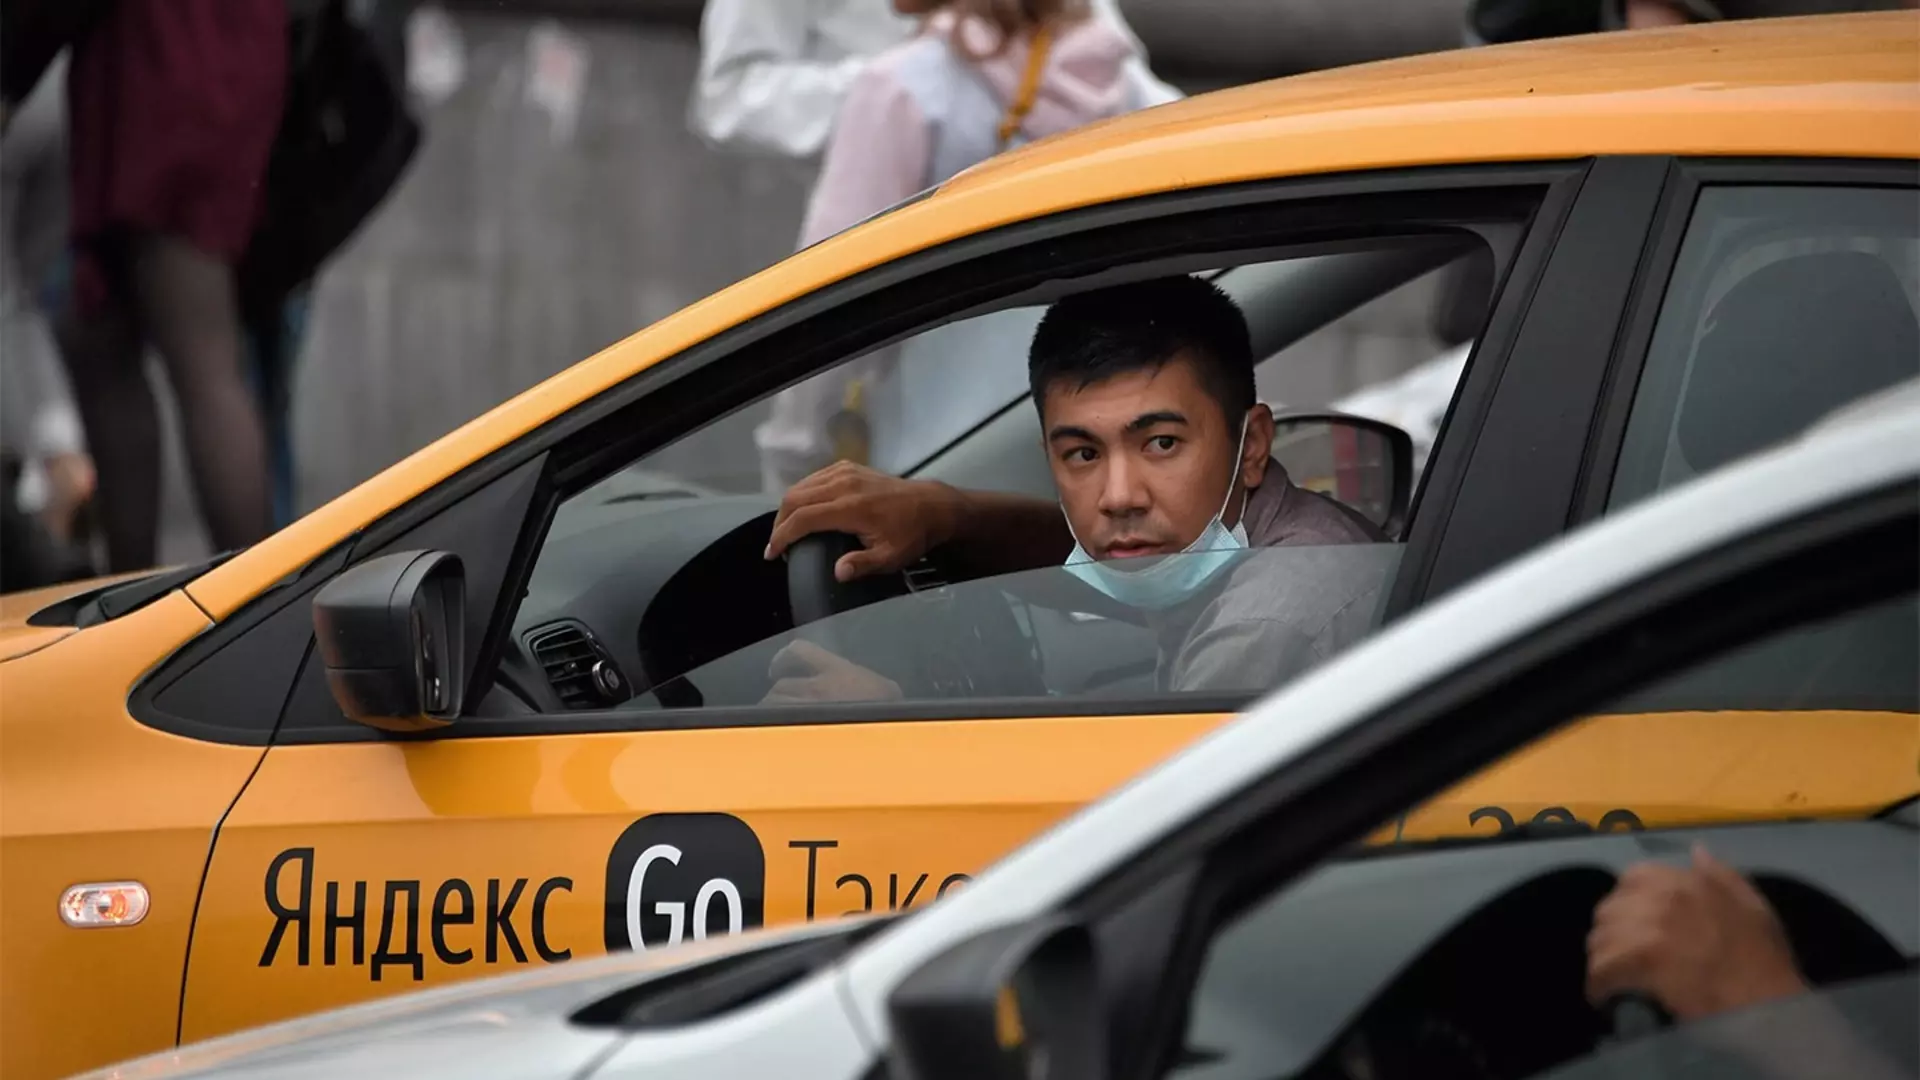 Саратовские власти запретили привлекать мигрантов для работы в такси и общепите